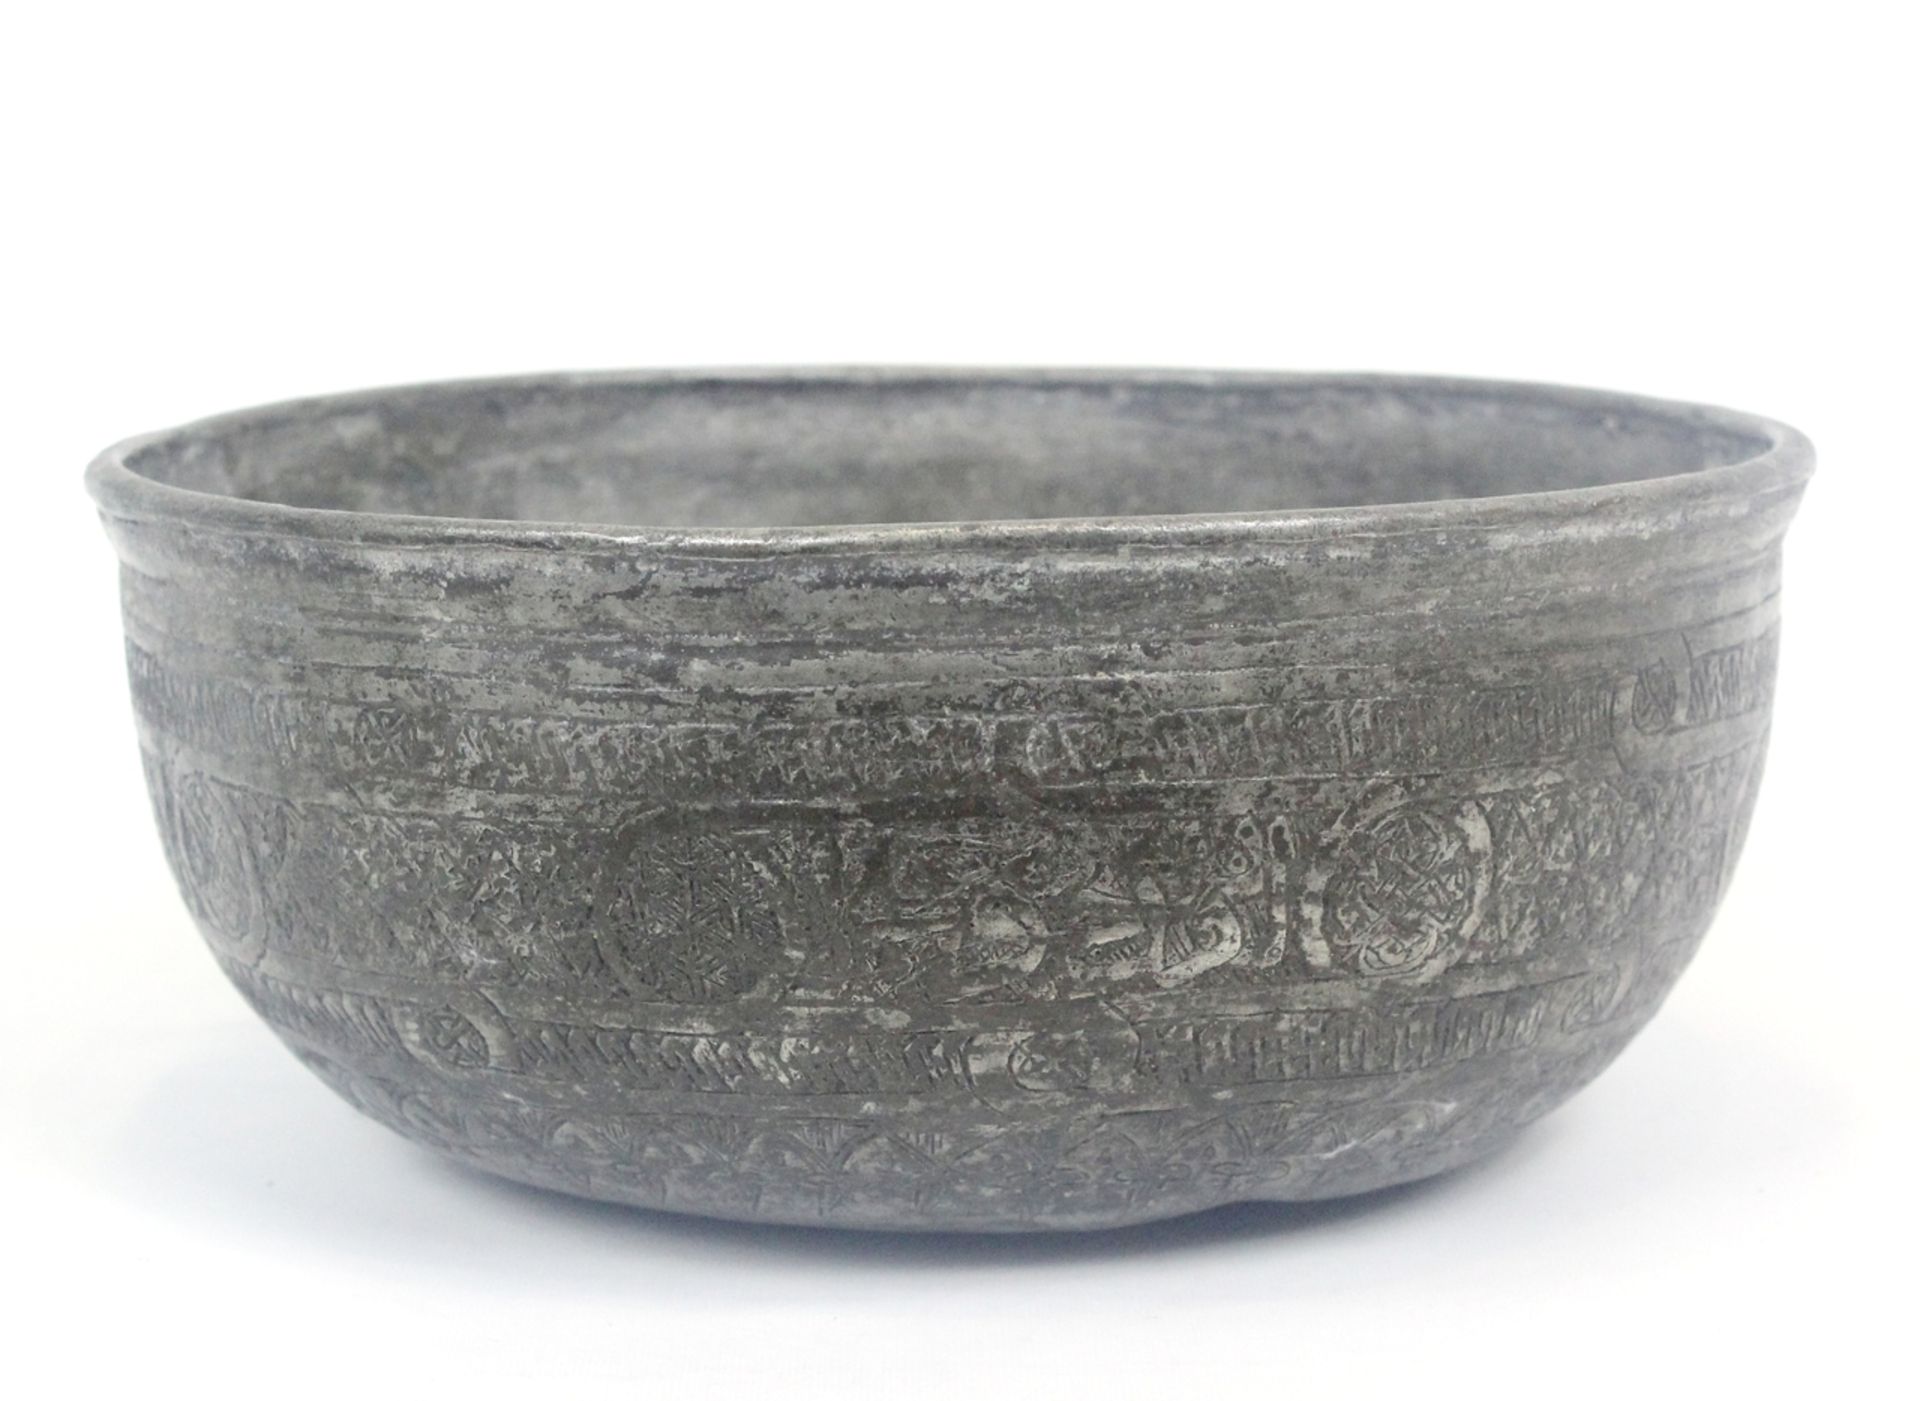 Safawiden Dynastie verzinnte und gravierte Schale aus Kupferbronze